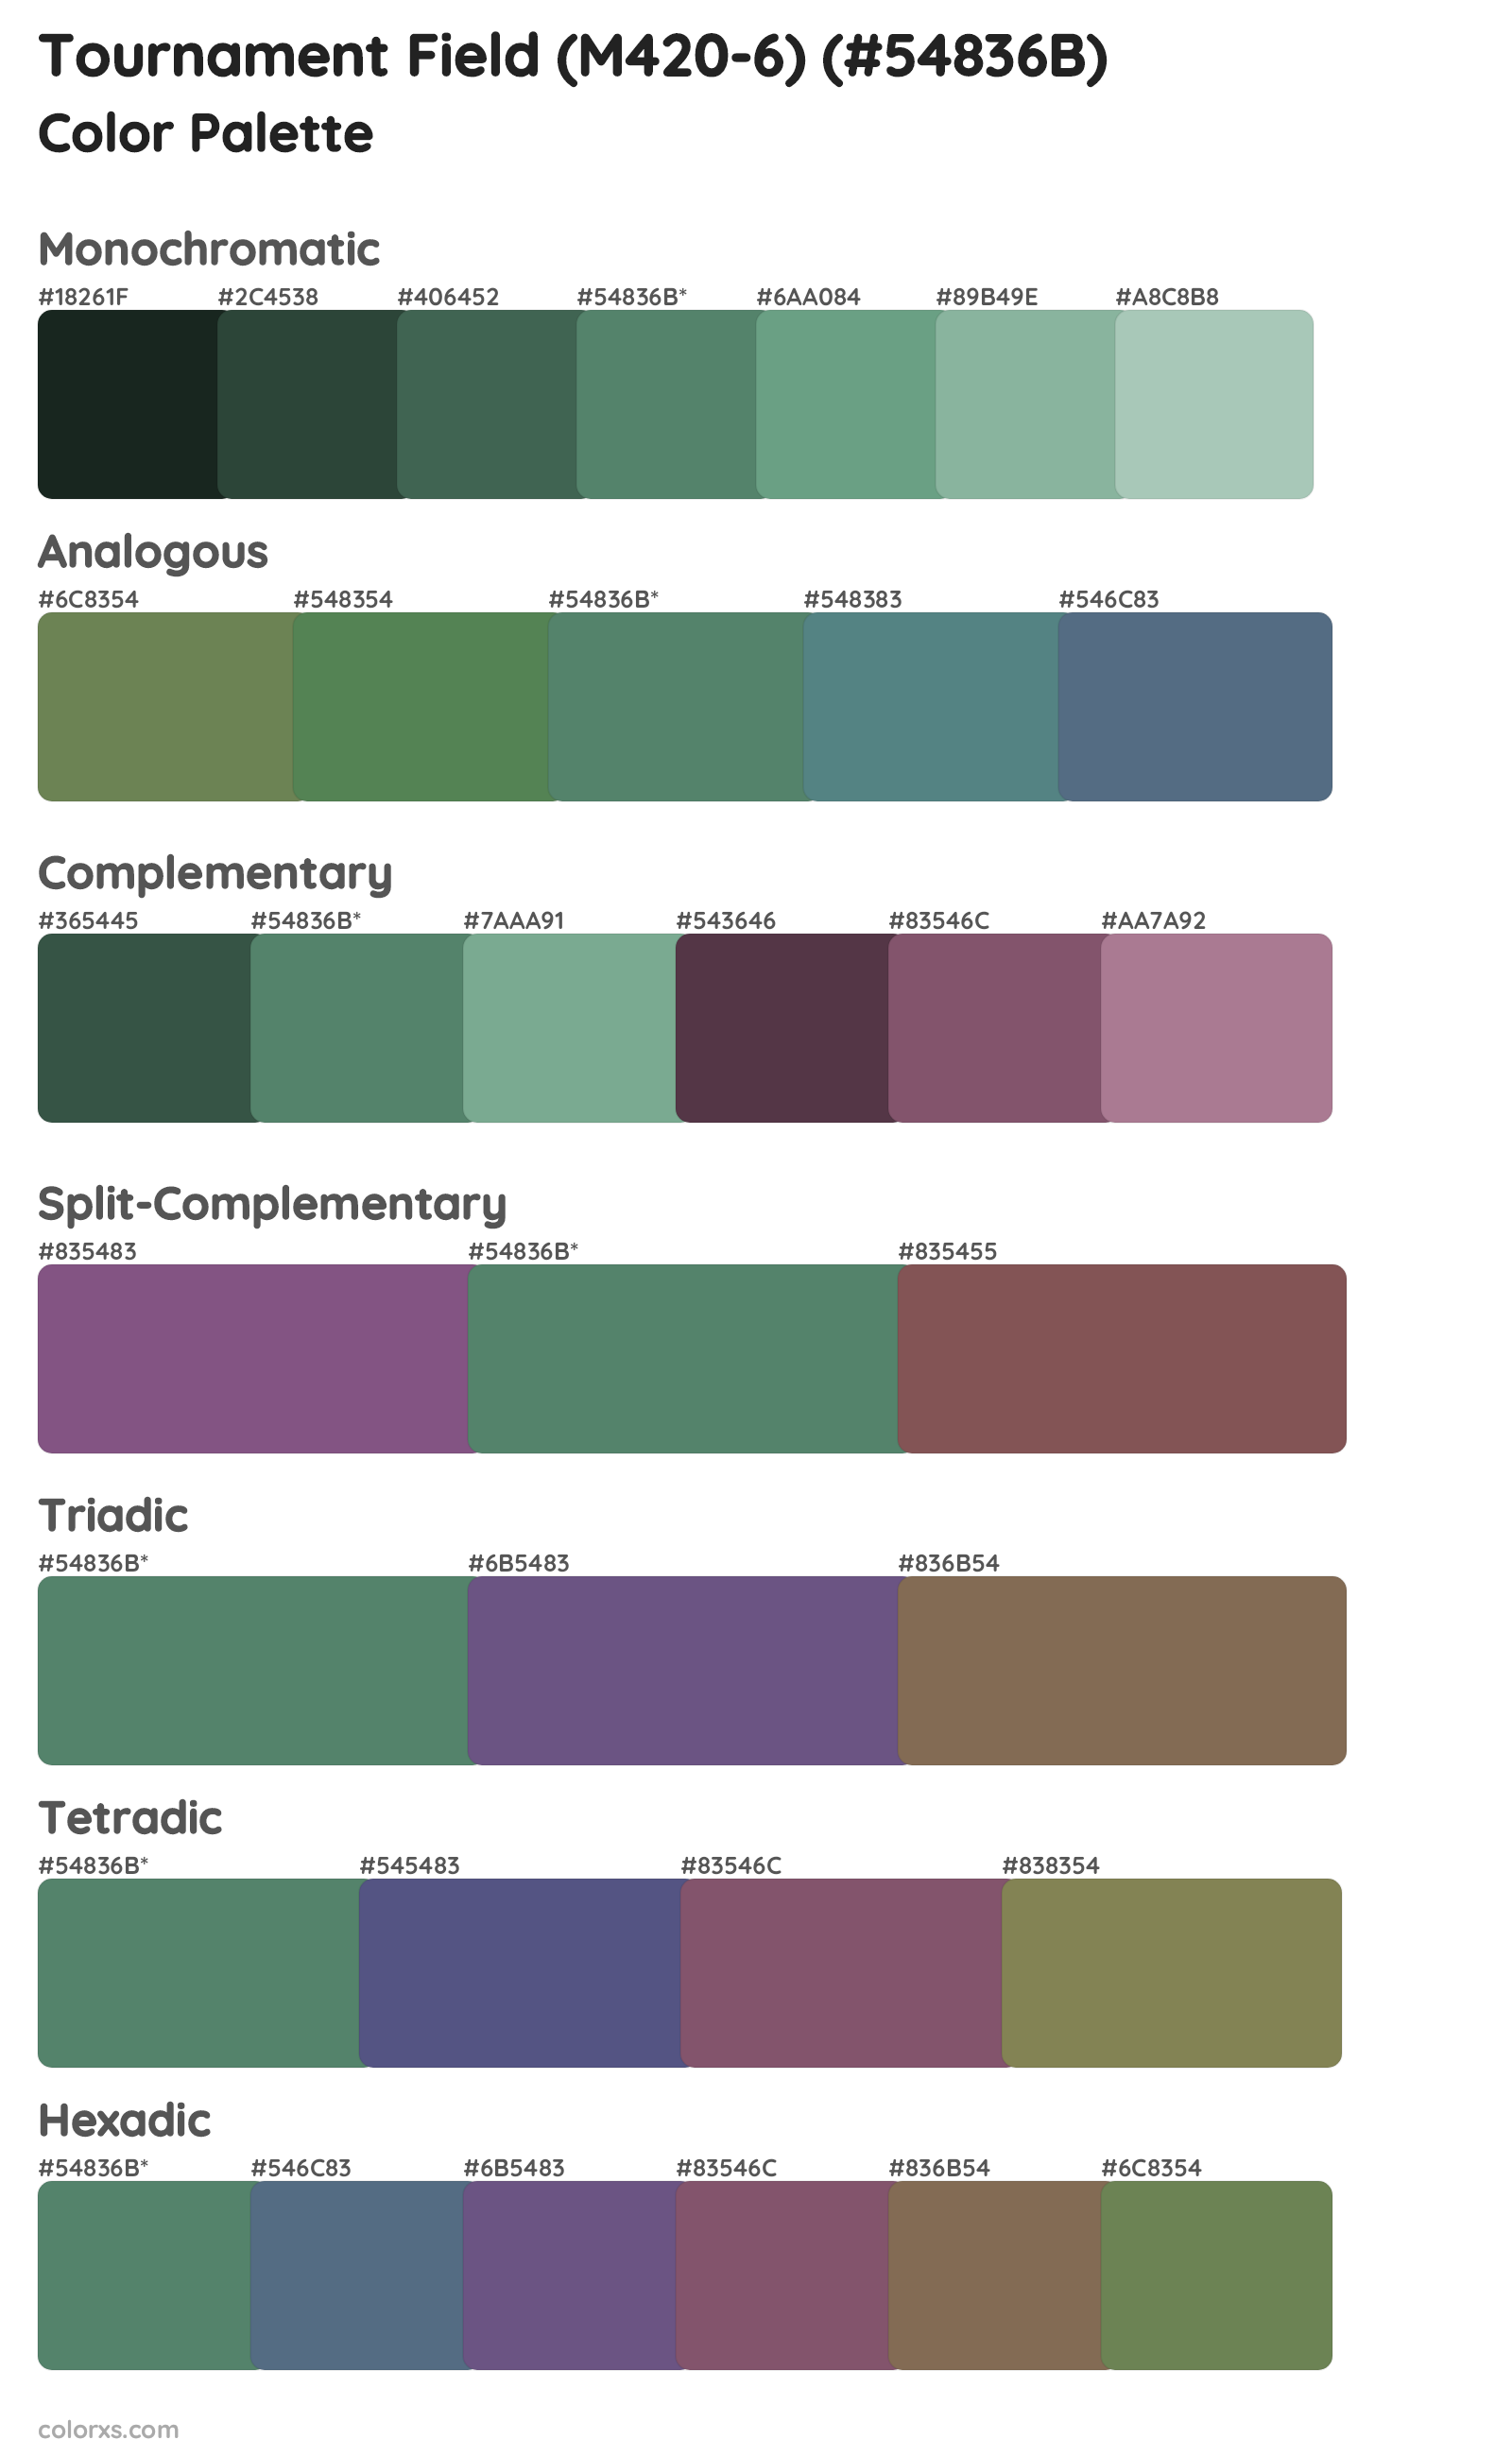 Tournament Field (M420-6) Color Scheme Palettes